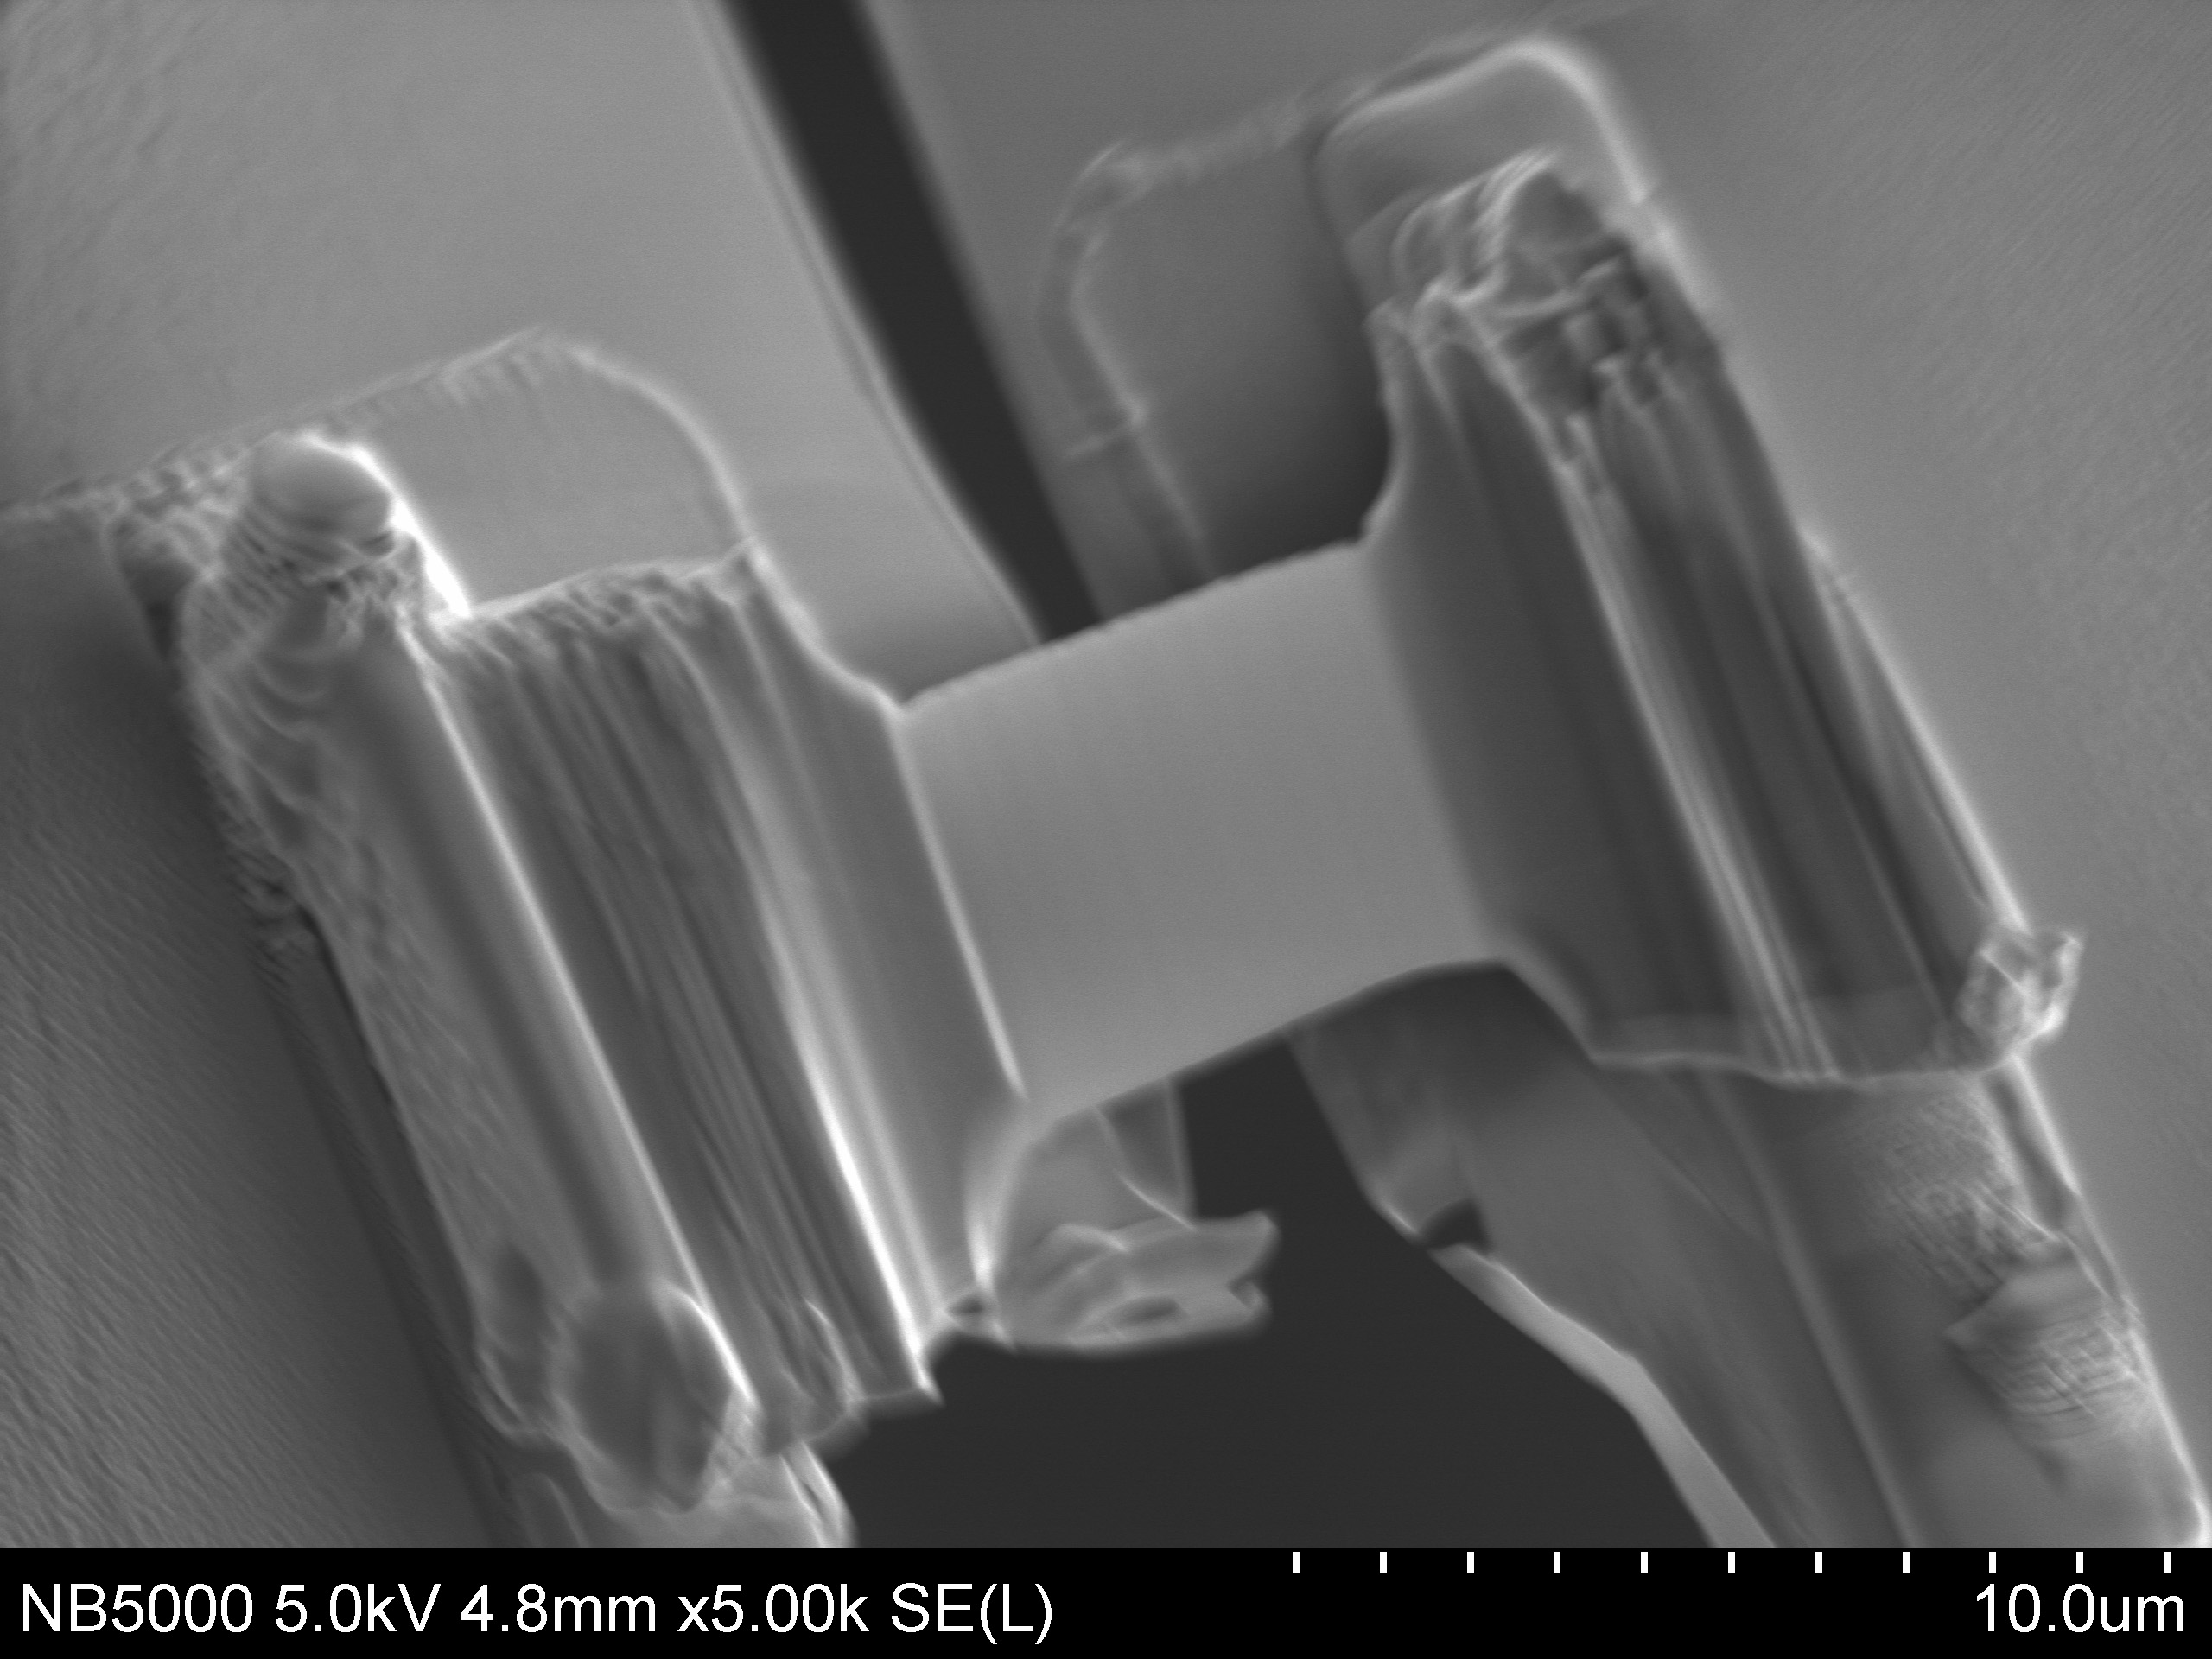 TEM lamella on electrically biasing chip